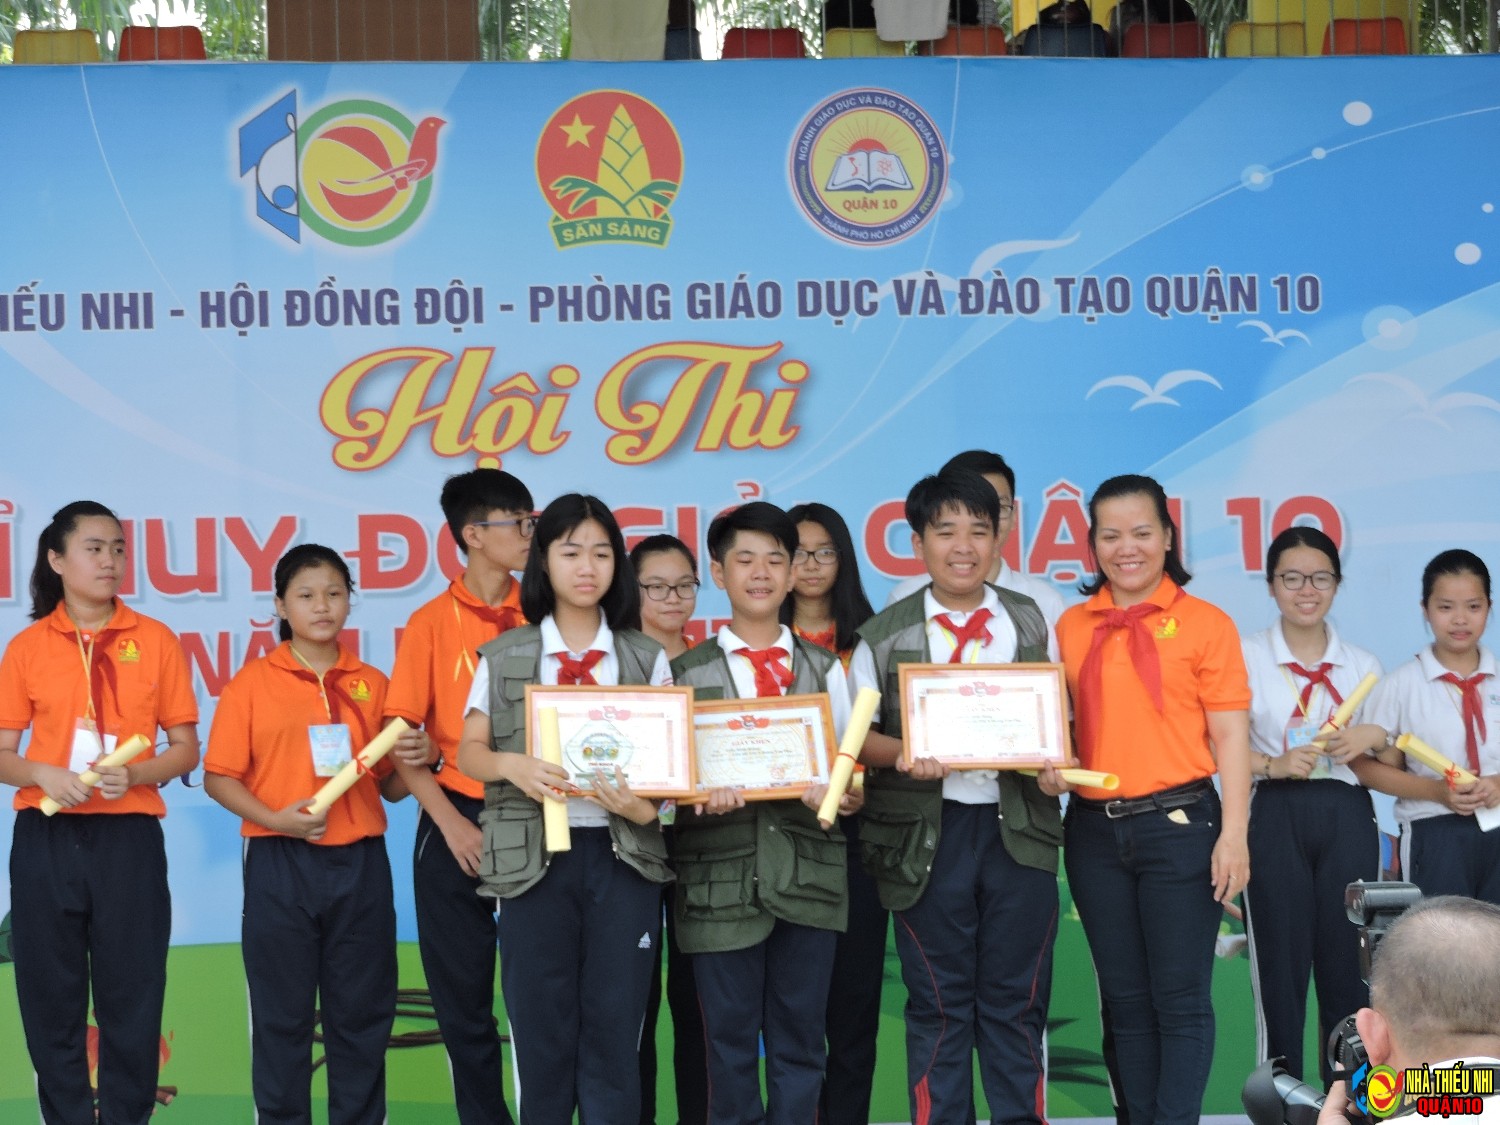 Bà Nguyễn Thị Ngoc Hiếu - PGĐ Nhà Thiếu nhi trao giấy khen cho các bạn đạt giải của Hội thi